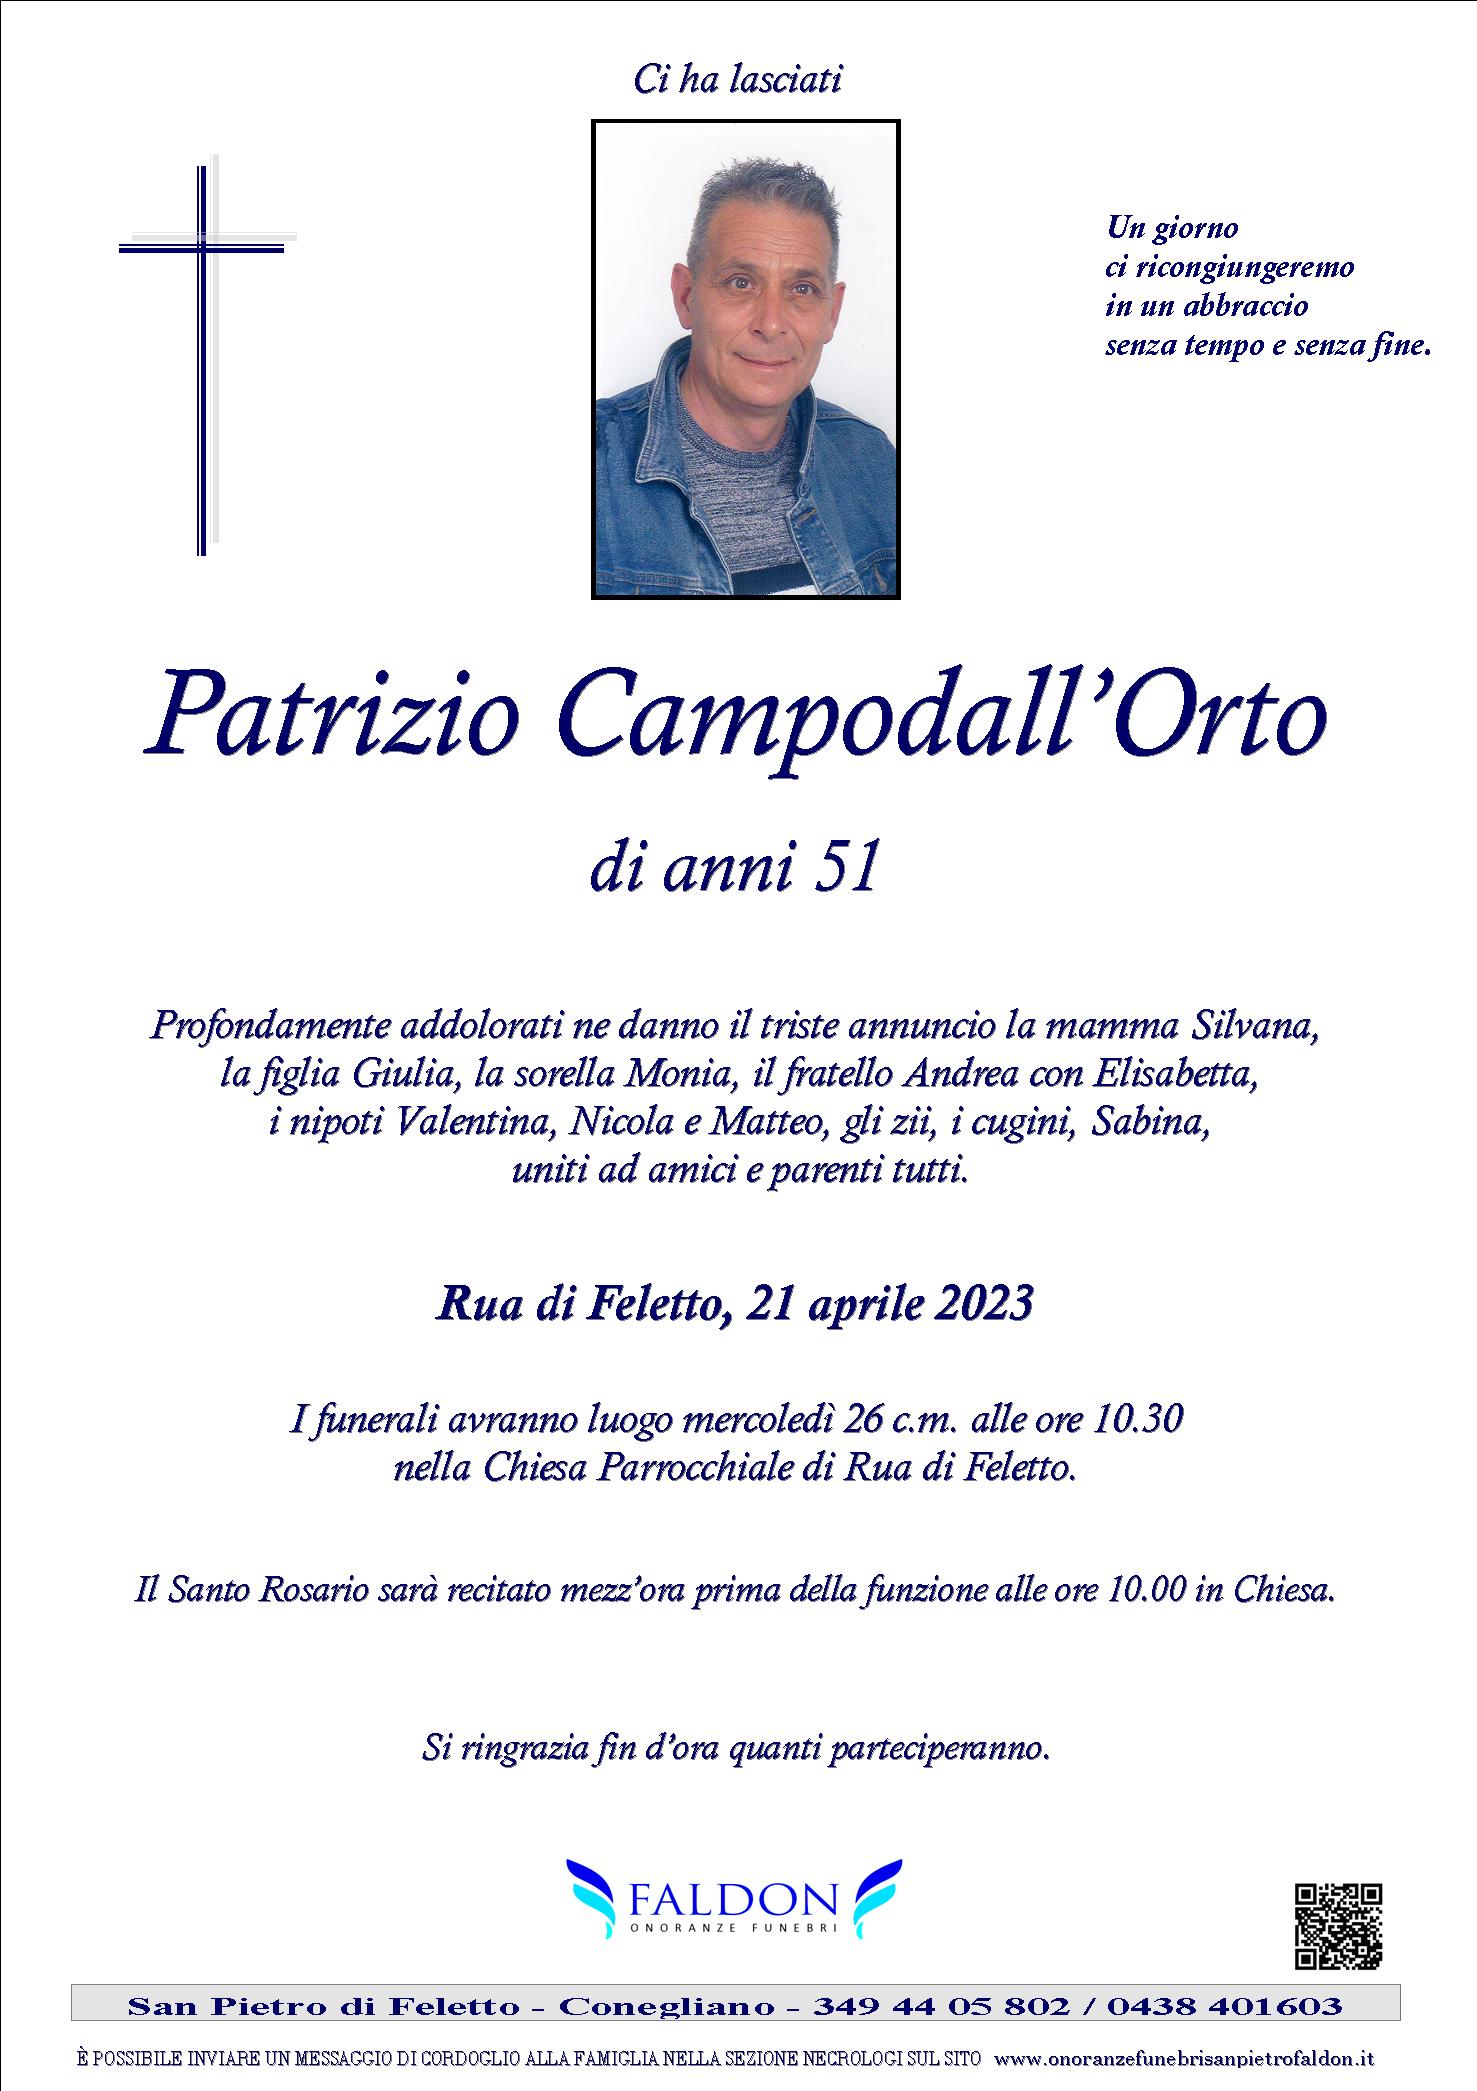 Patrizio Campodall’Orto